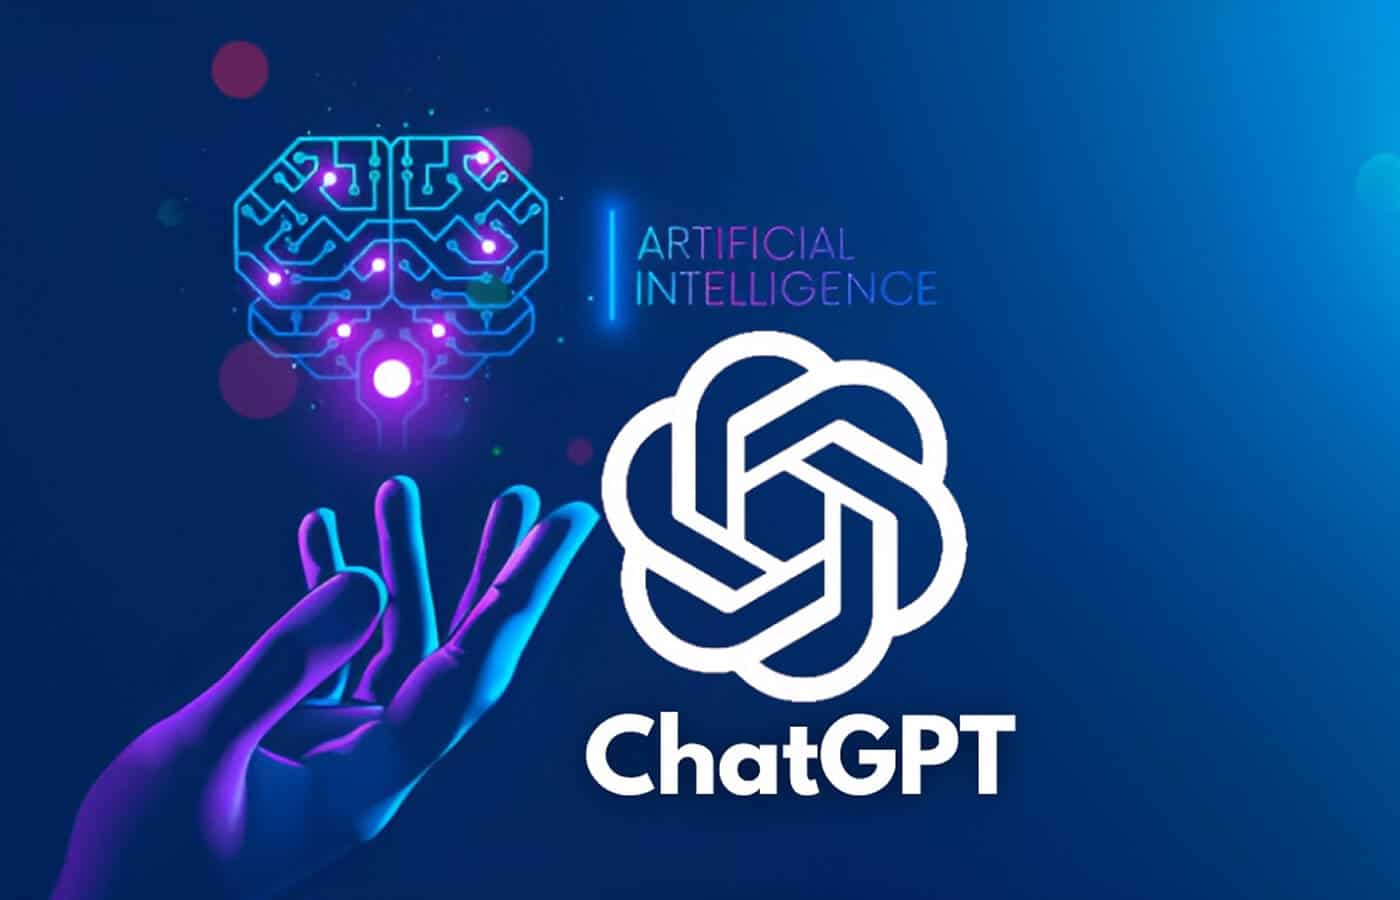 Αν είστε και εσείς ένας απο τους αυτούς που χρησιμοποιούν το ChatGPT, αλλά νομίζετε ότι κάτι είναι λάθος, δείτε το βίντεο και γίνεται Master στο ChatGPT μαθαίνοντας άμεση μηχανική.